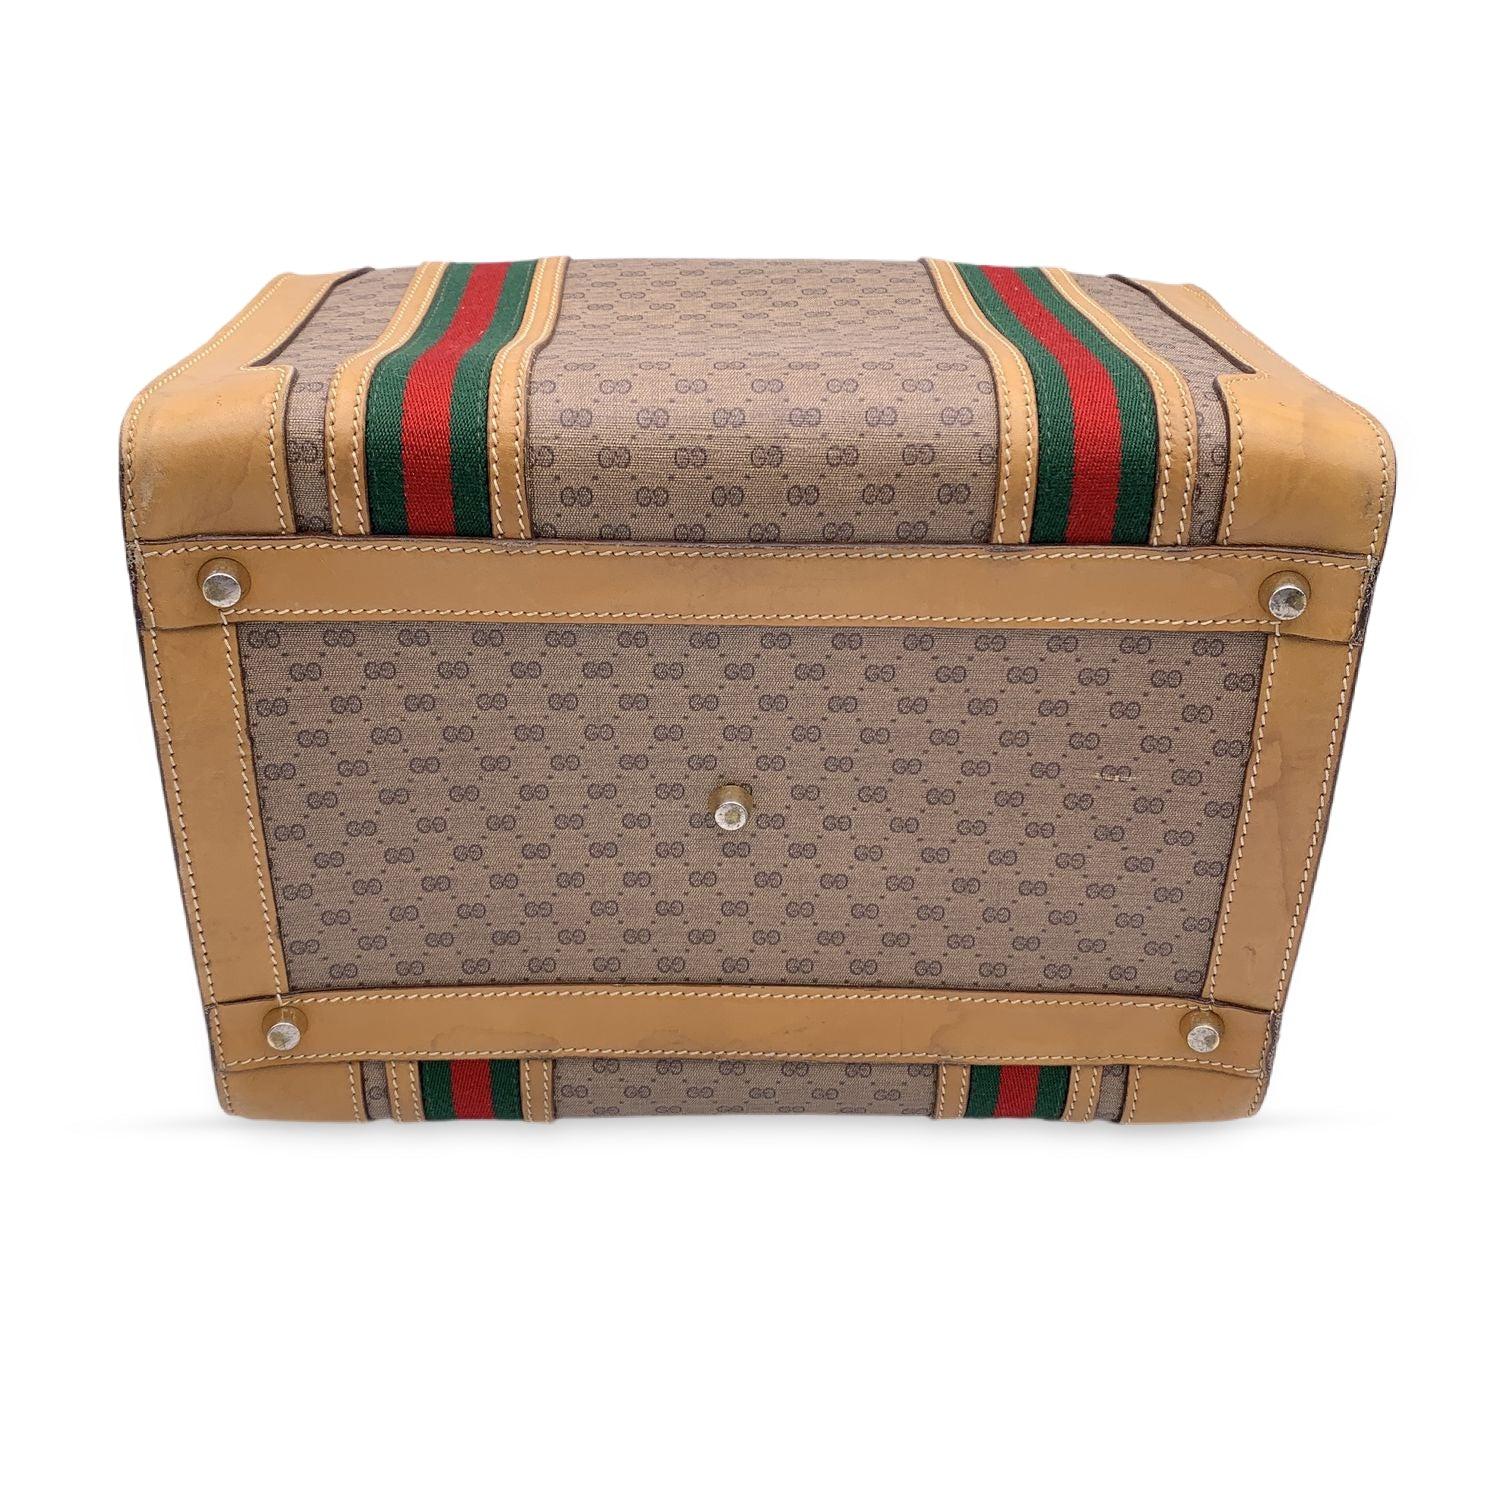 Gucci Vintage Beige Monogram Canvas Train Case Bag with Stripes 2